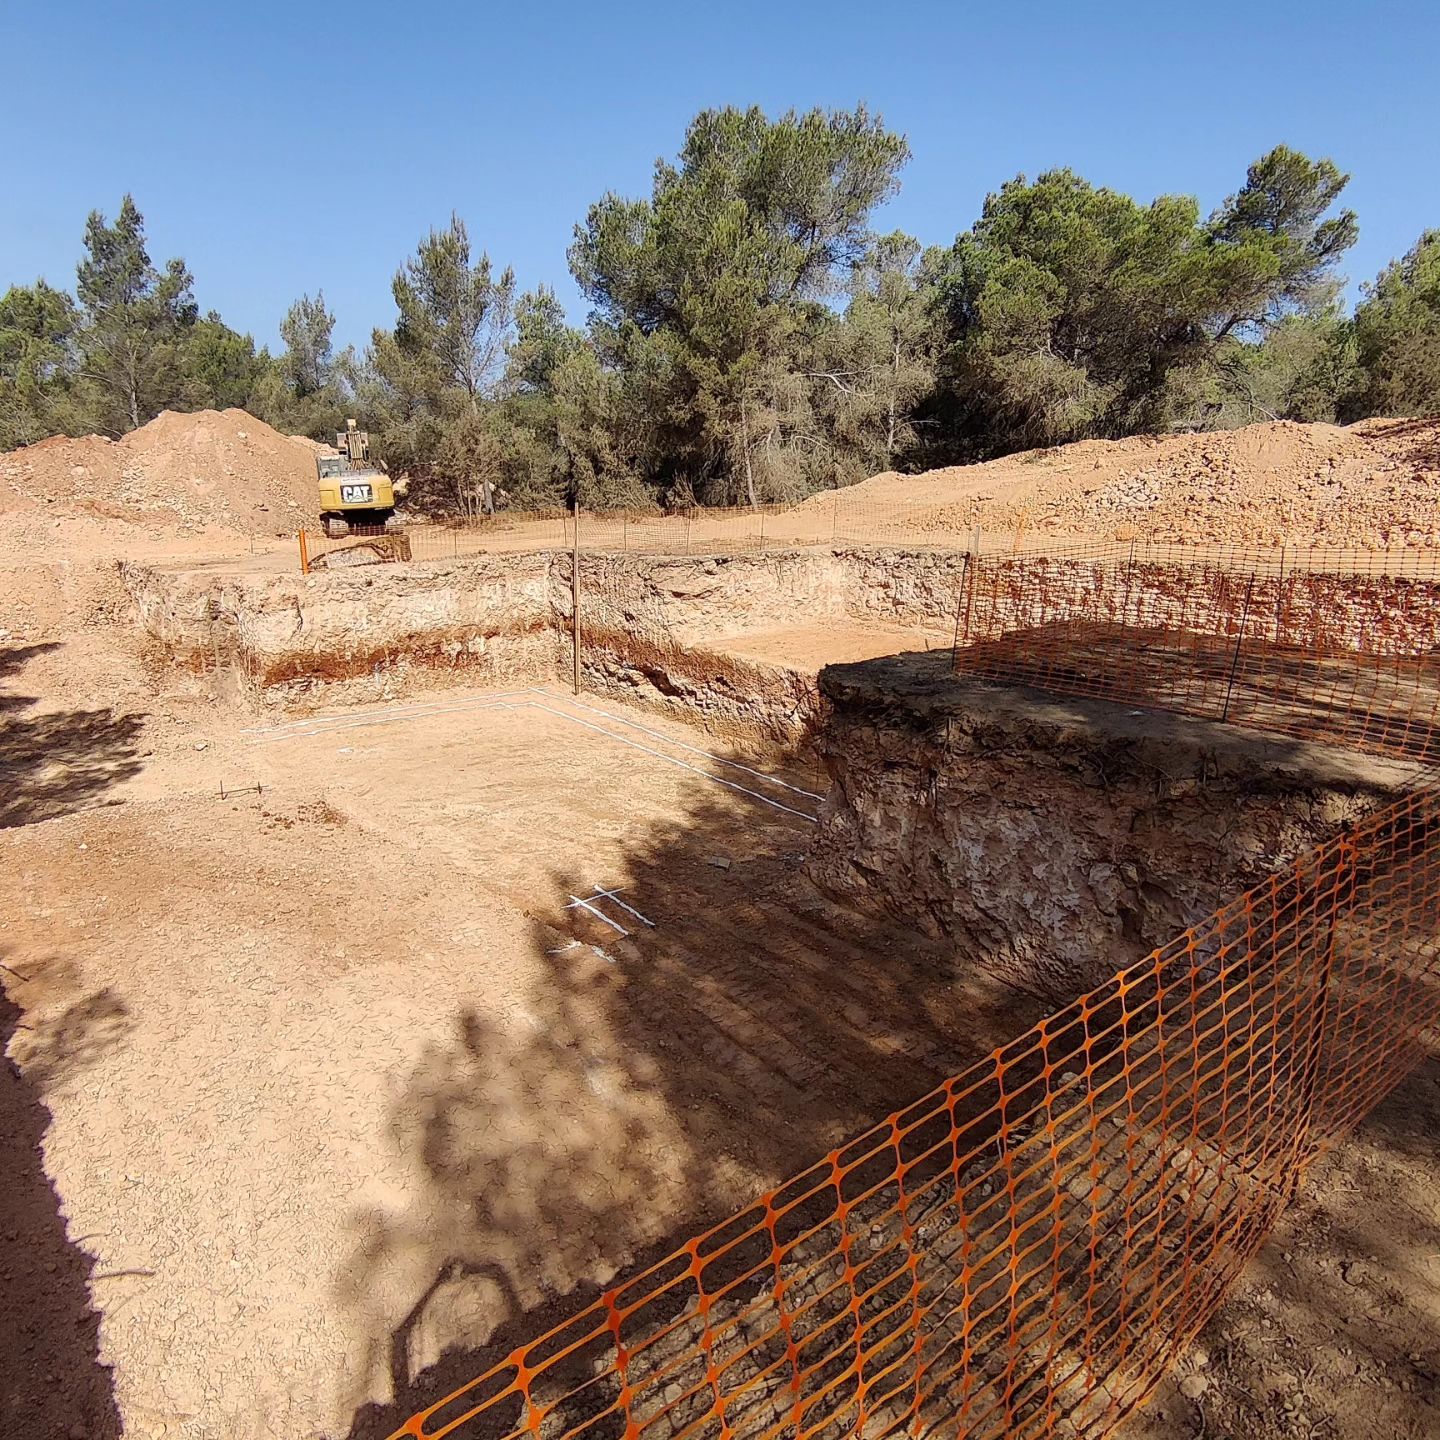 Saturday morning! En sus marcas...
#excavaciones #replanteo #work #construccion #start #eivissa #porticosyforjados